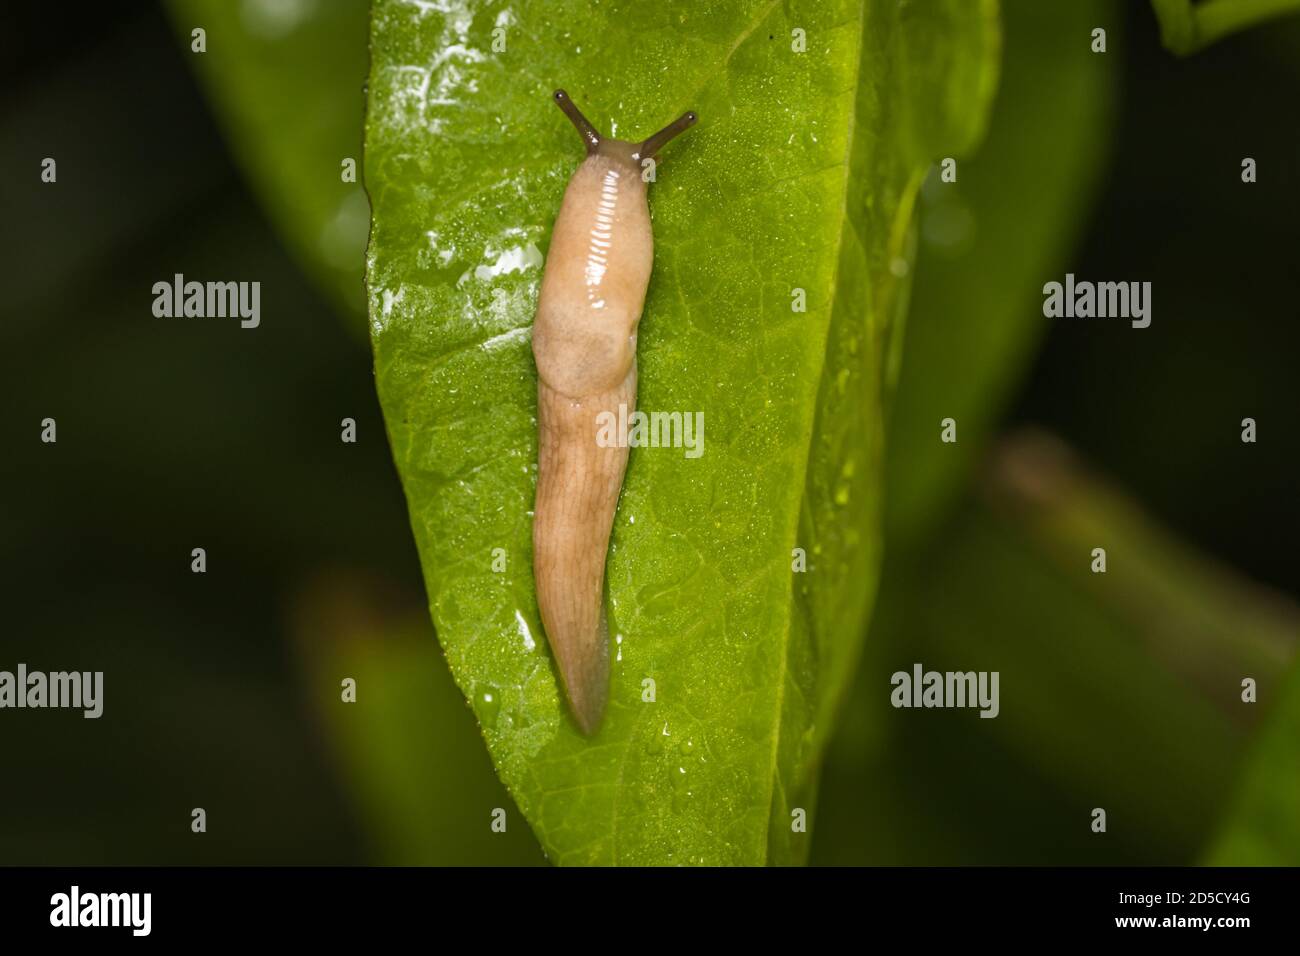 Grey field slug or Milky slug (Deroceras agreste) on a leaf Stock Photo